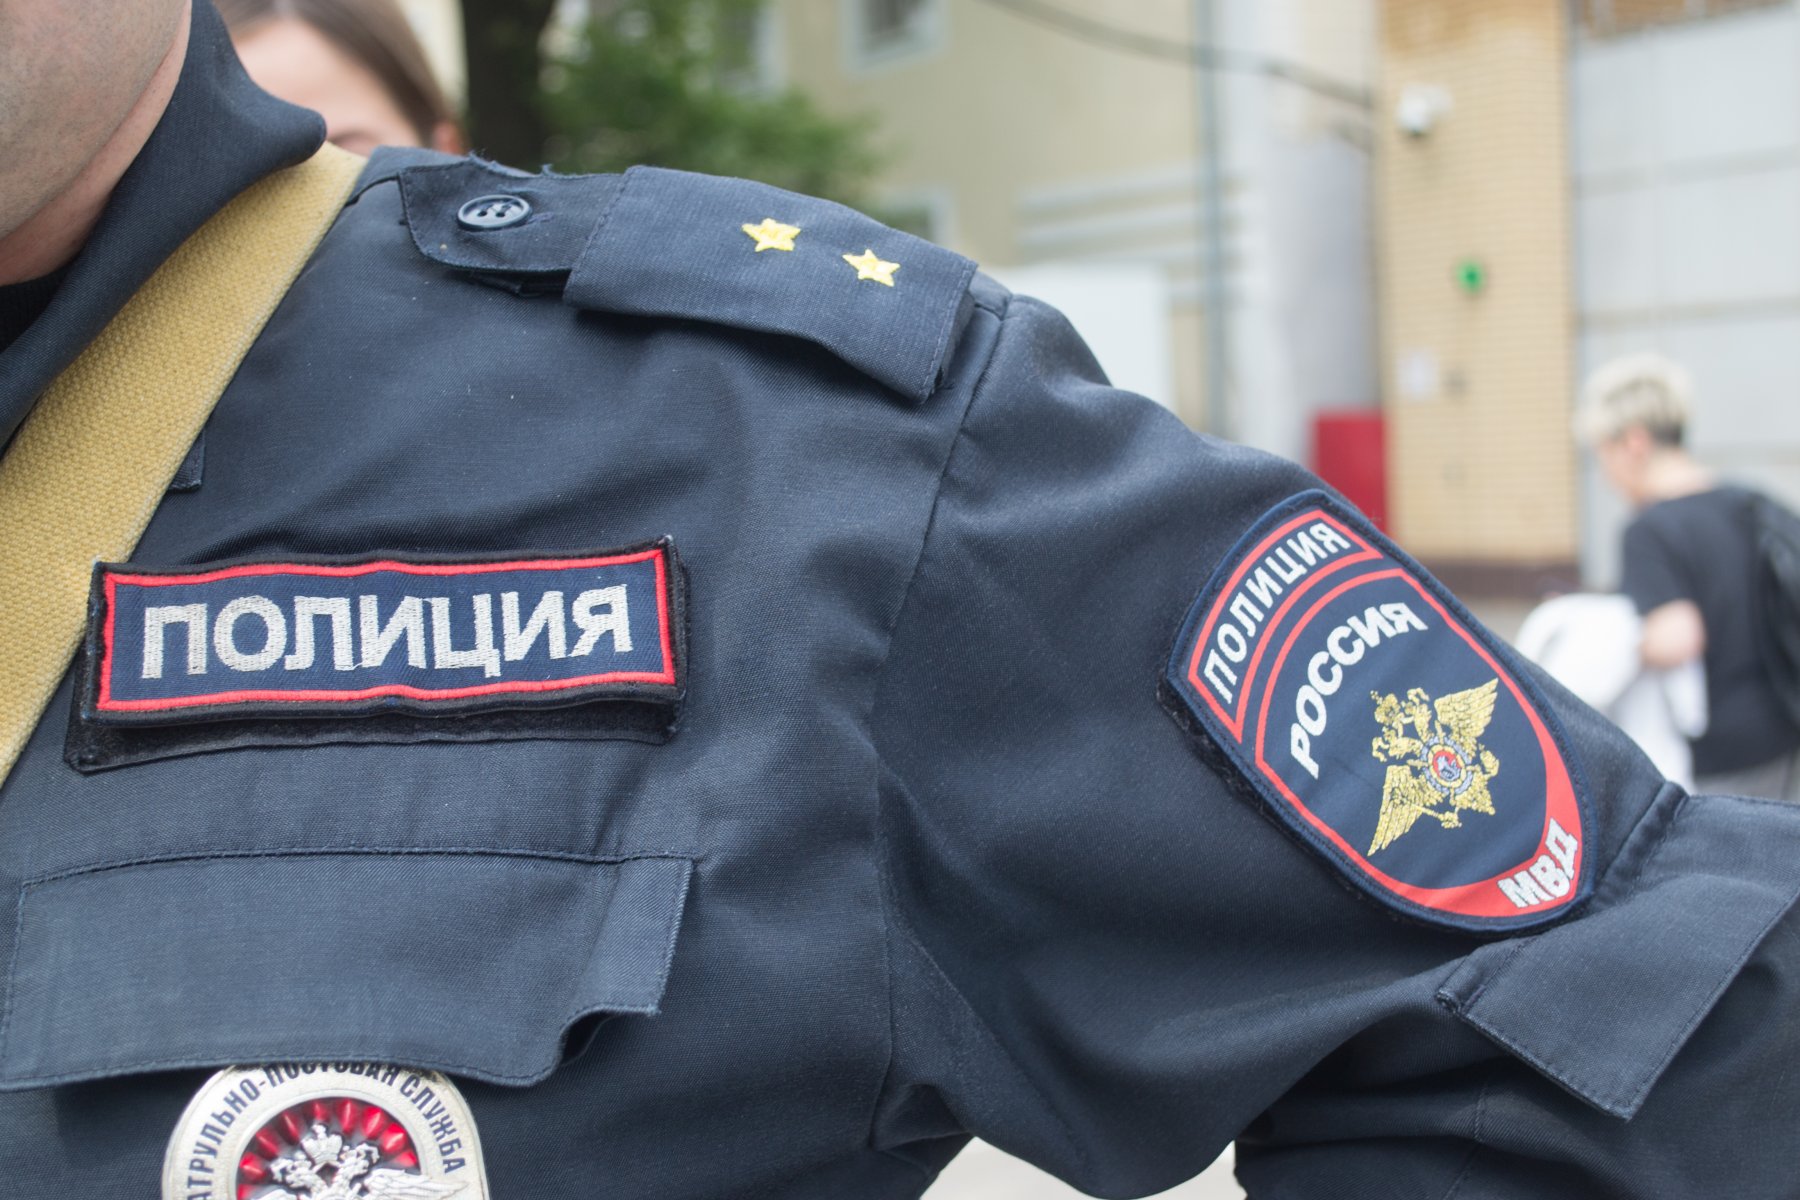 СМИ: в Звенигороде полицейские отбирали жилье у граждан